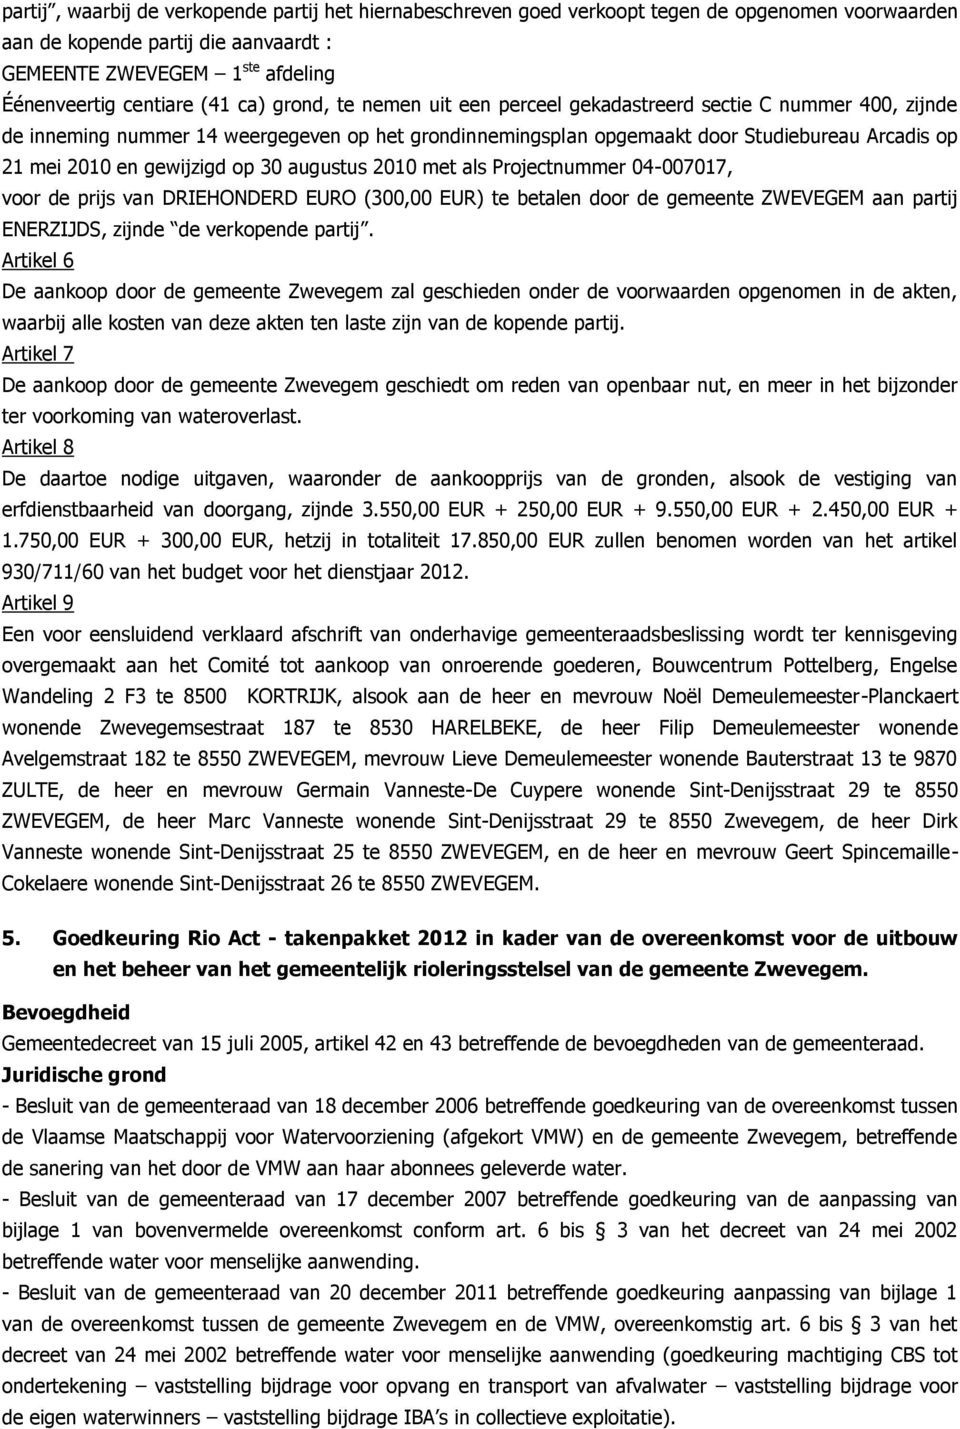 gewijzigd op 30 augustus 2010 met als Projectnummer 04-007017, voor de prijs van DRIEHONDERD EURO (300,00 EUR) te betalen door de gemeente ZWEVEGEM aan partij ENERZIJDS, zijnde de verkopende partij.